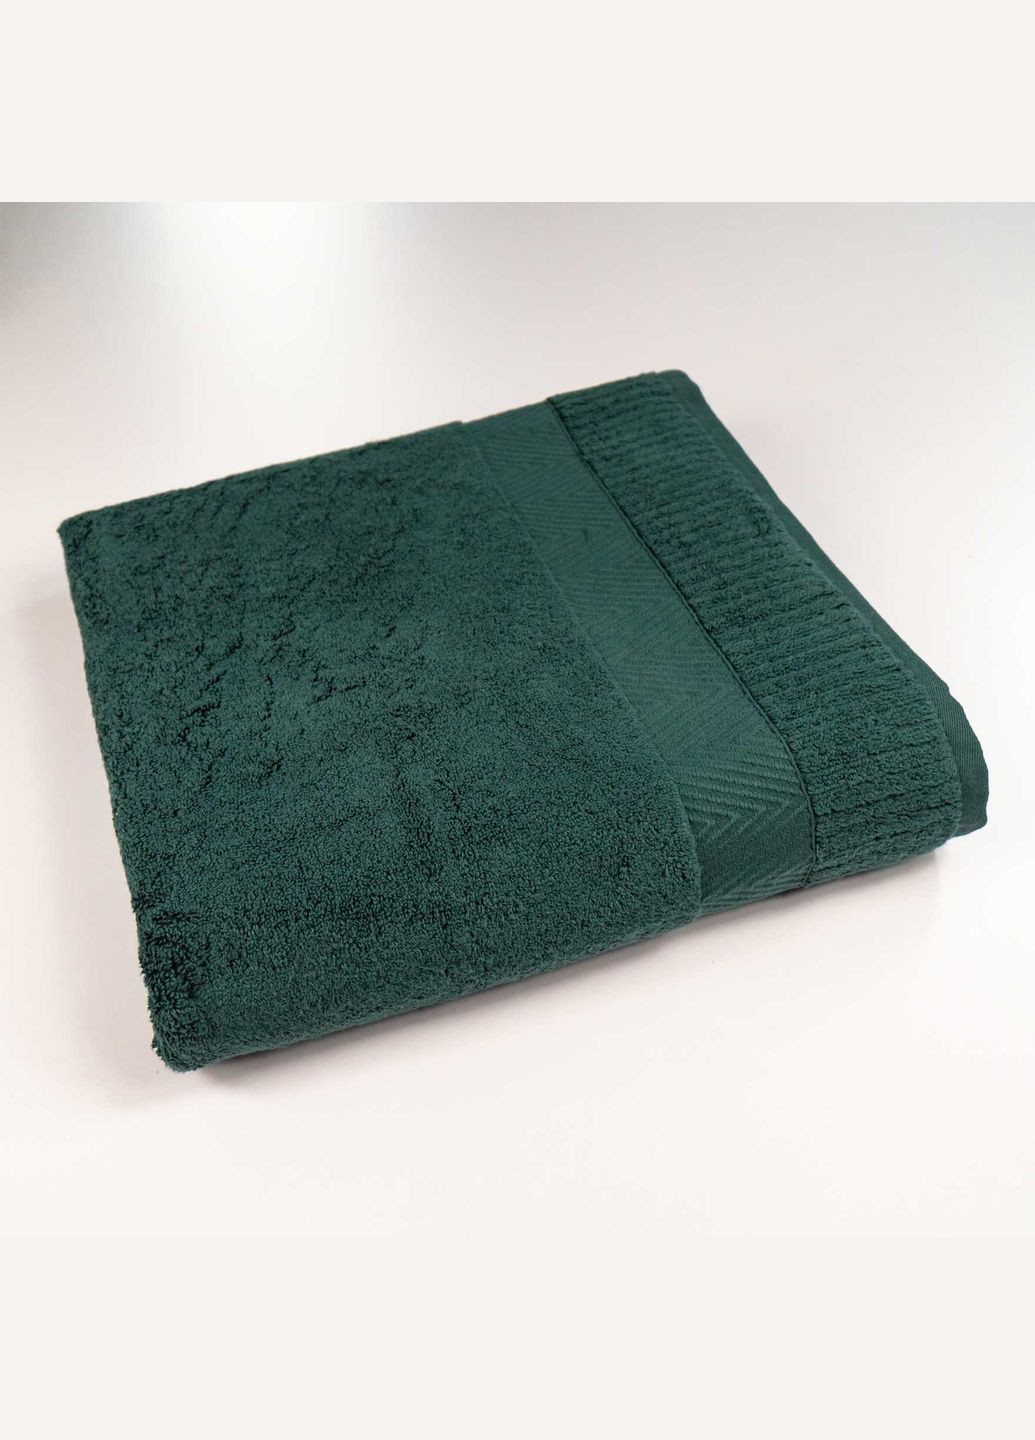 GM Textile комплект махровых полотенец зеро твист бордюр 3шт 40x70см, 50x90см, 70x140см 550г/м2 () зеленый производство -